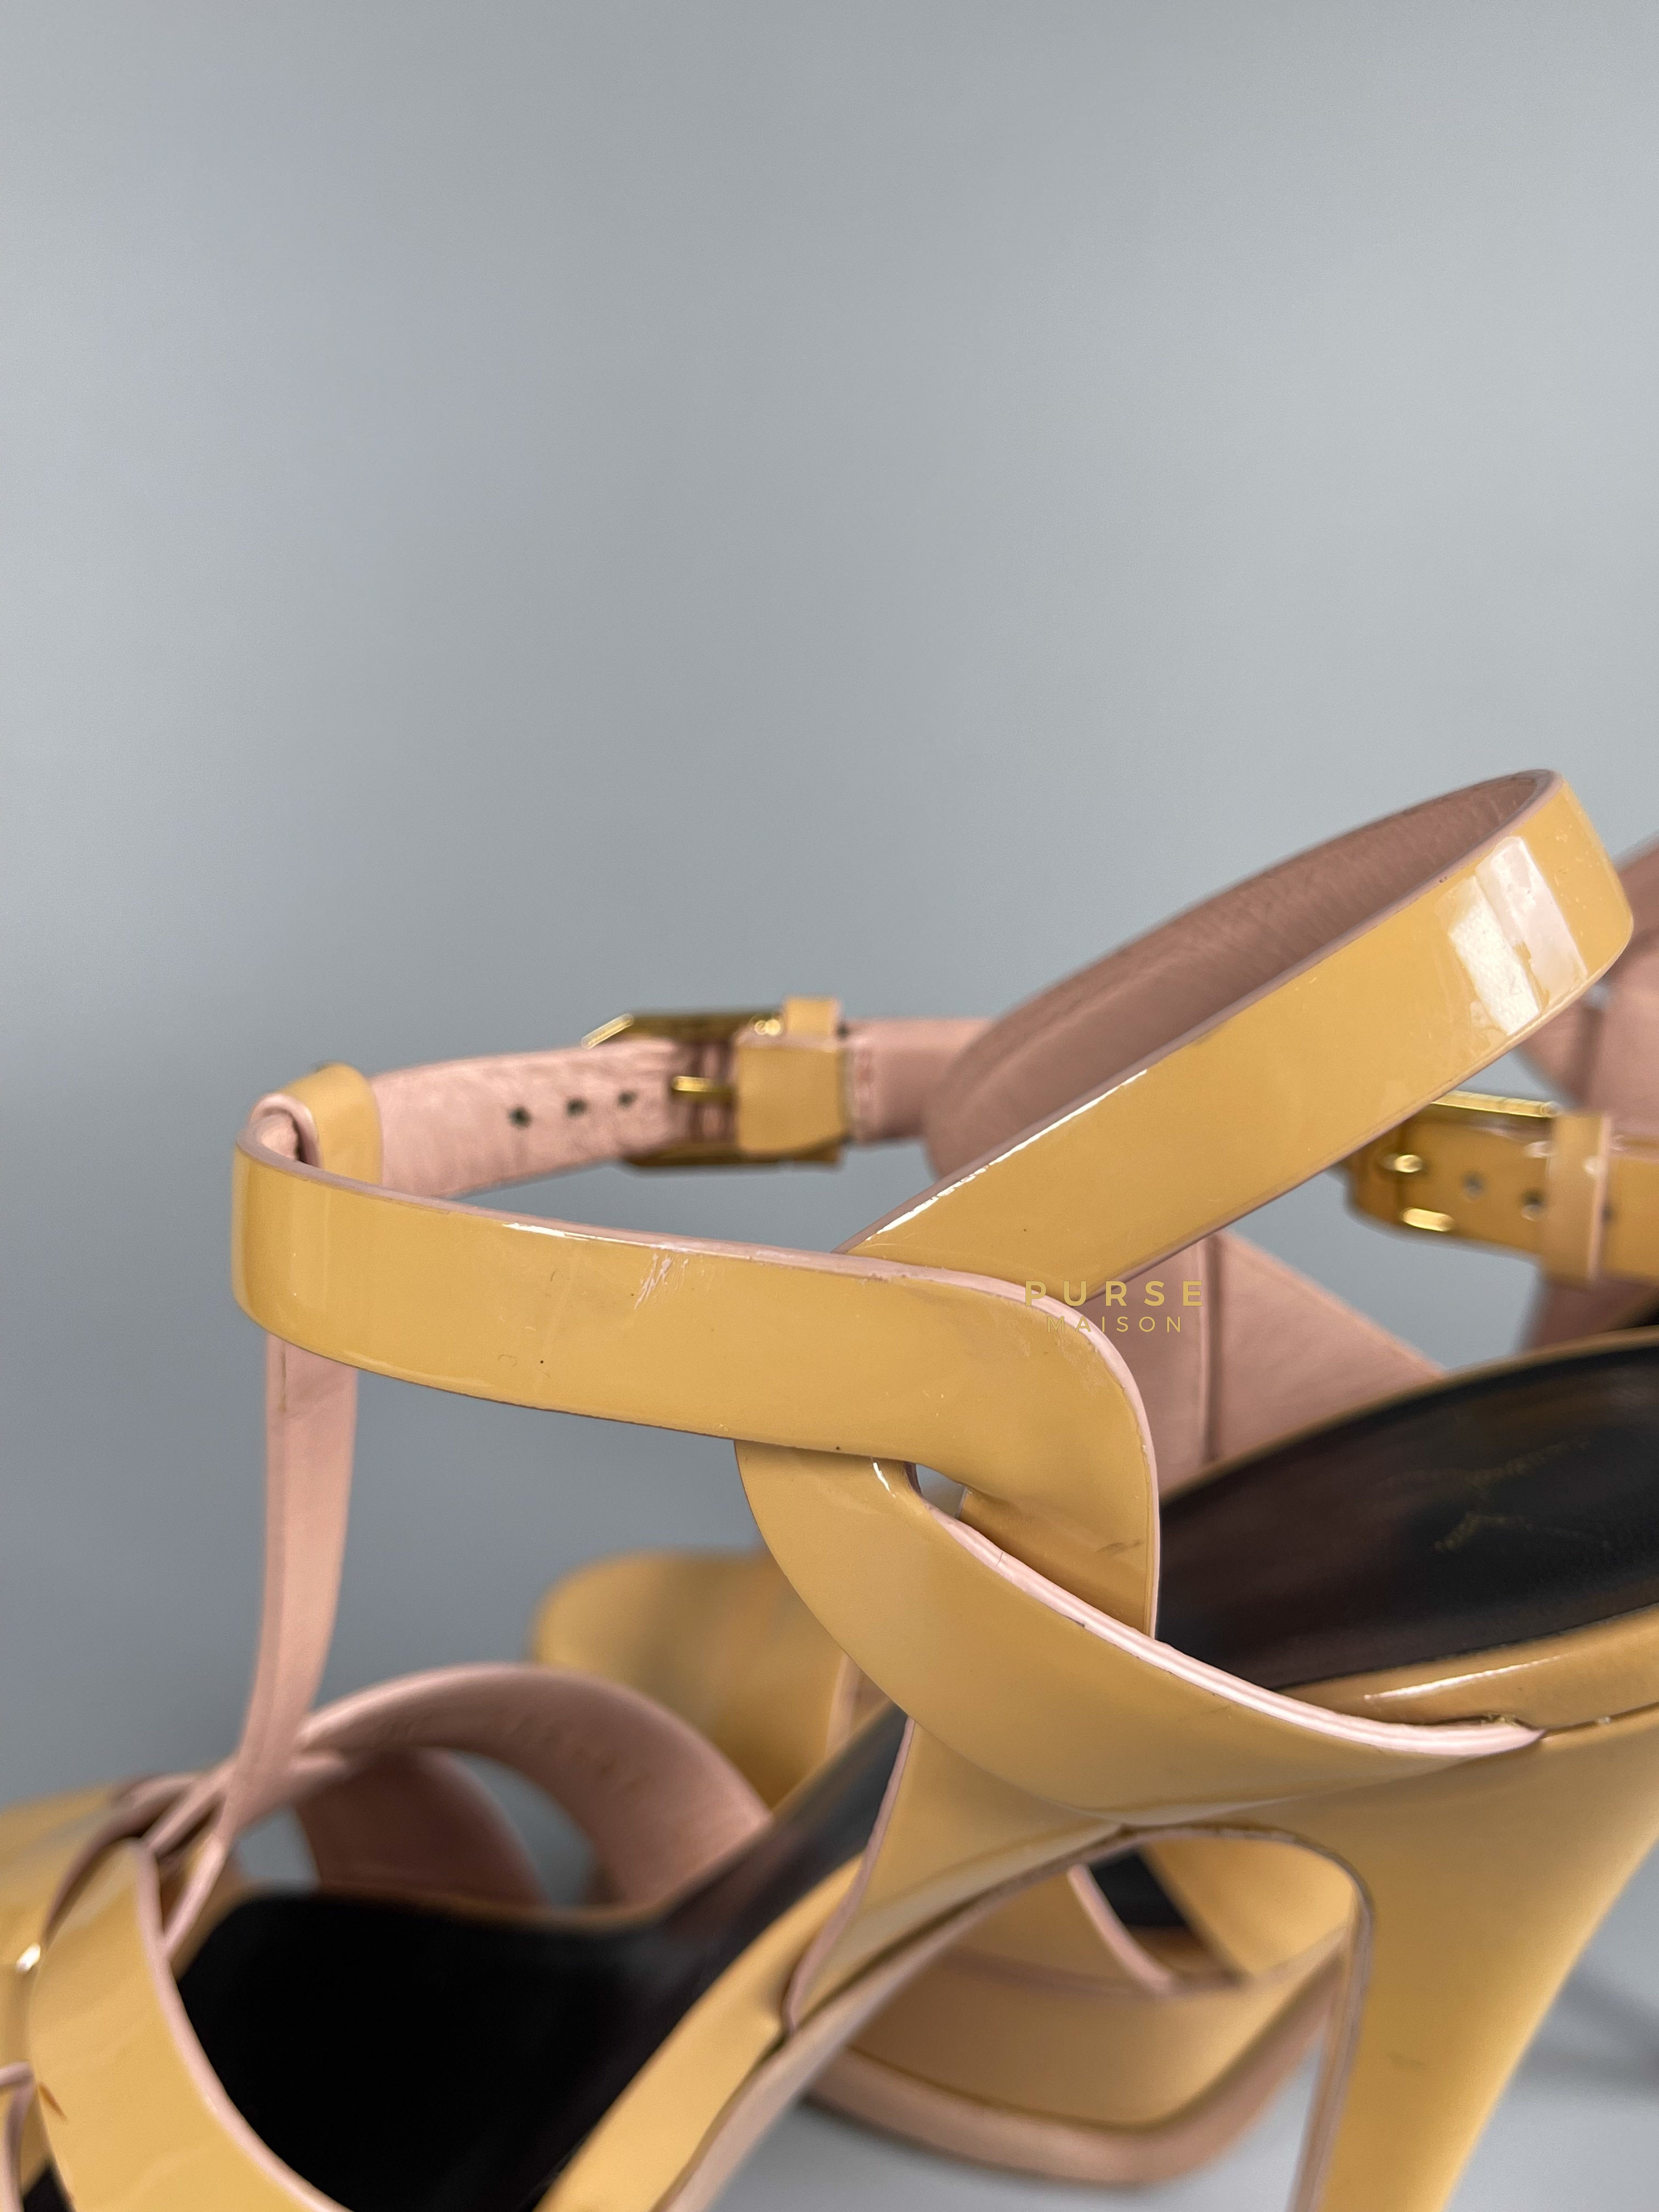 YSL Tribute Black Yellow High Heels Sandals (Size 36 EU, 24cm) | Purse Maison Luxury Bags Shop